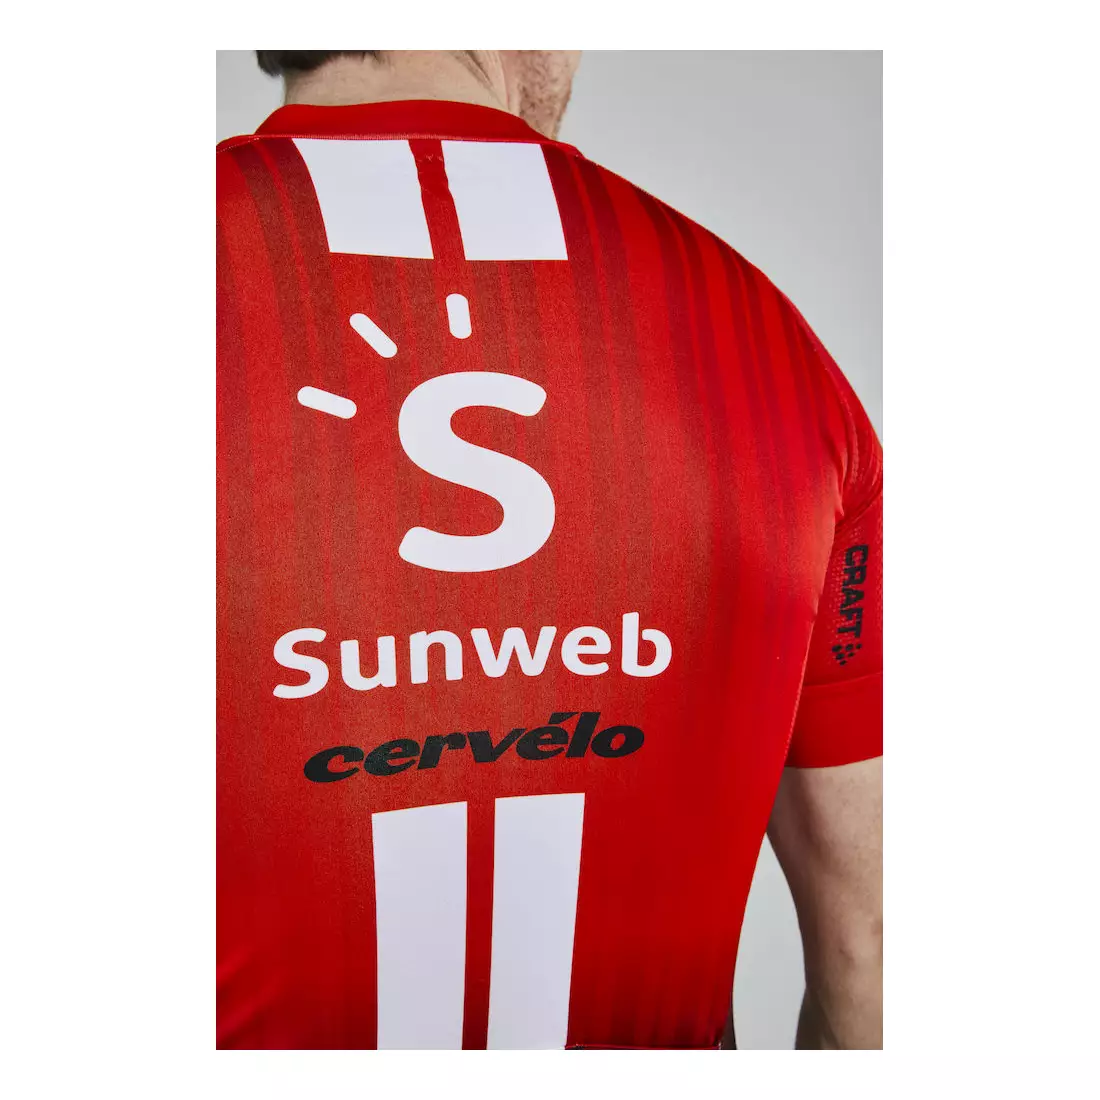 CRAFT SUNWEB 2019 replika cyklistického dresu 1908208-426000